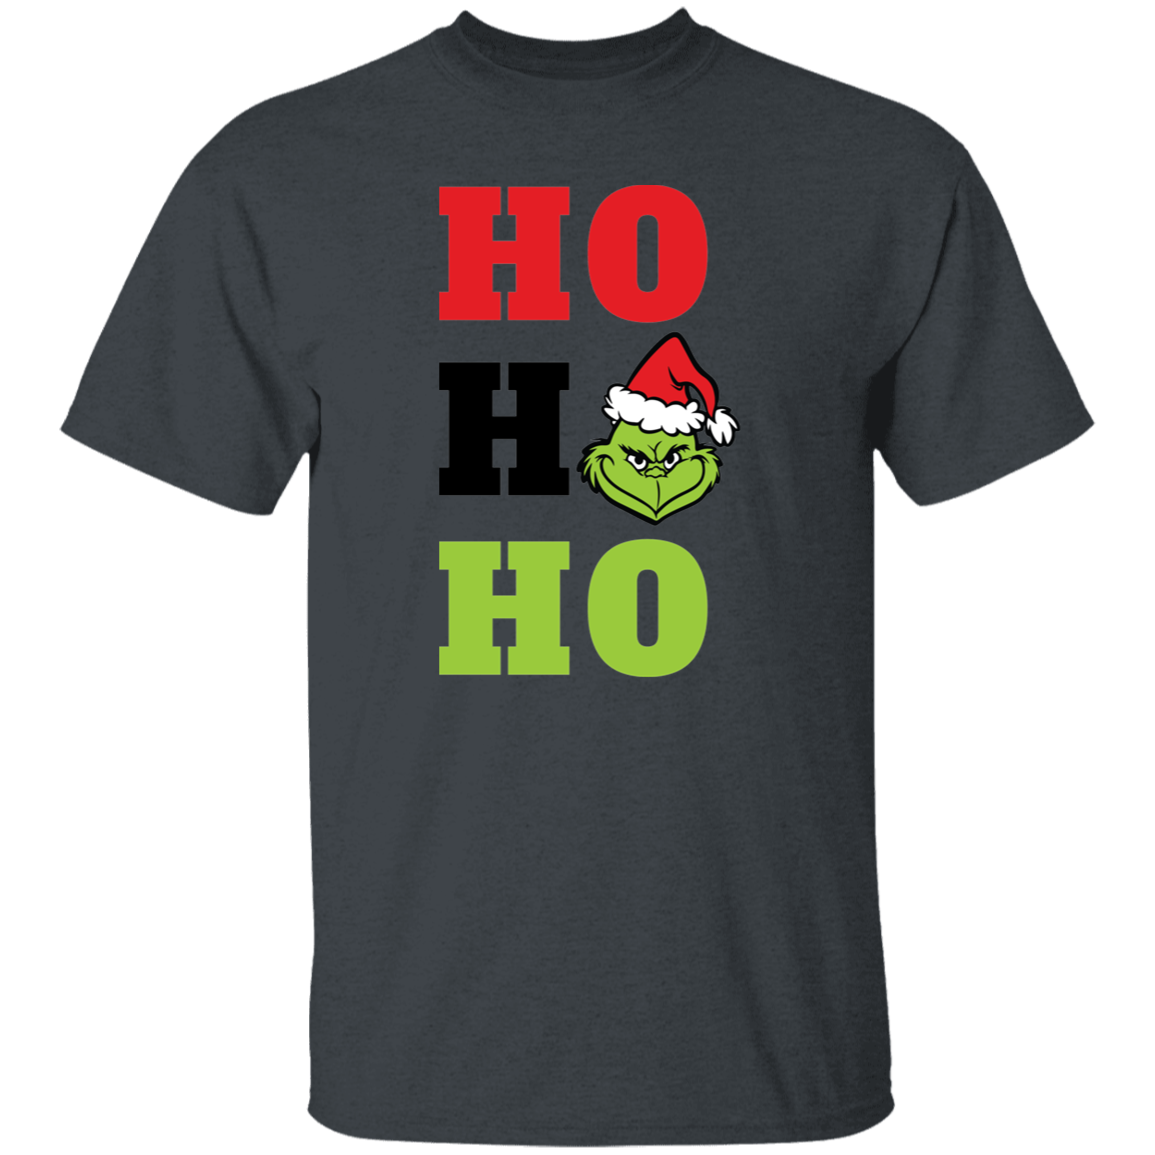 Ho Ho Ho 5.3 oz. T-Shirt